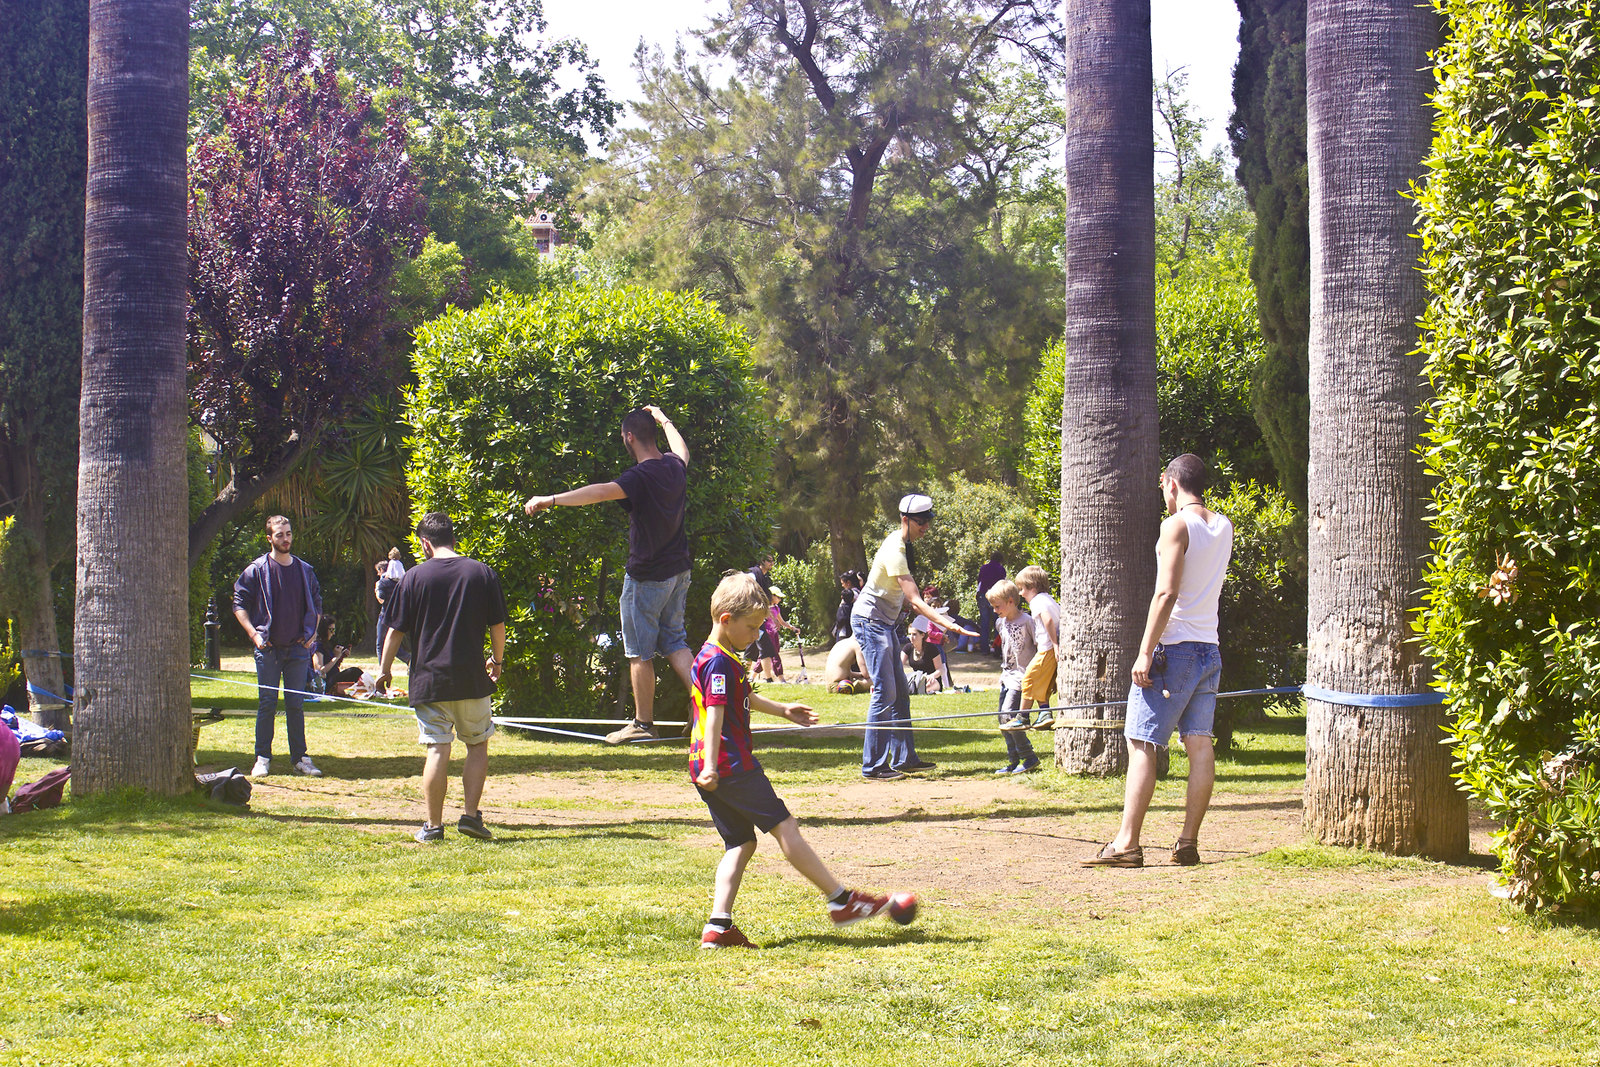 park fun national holiday playing bunting ciutadella